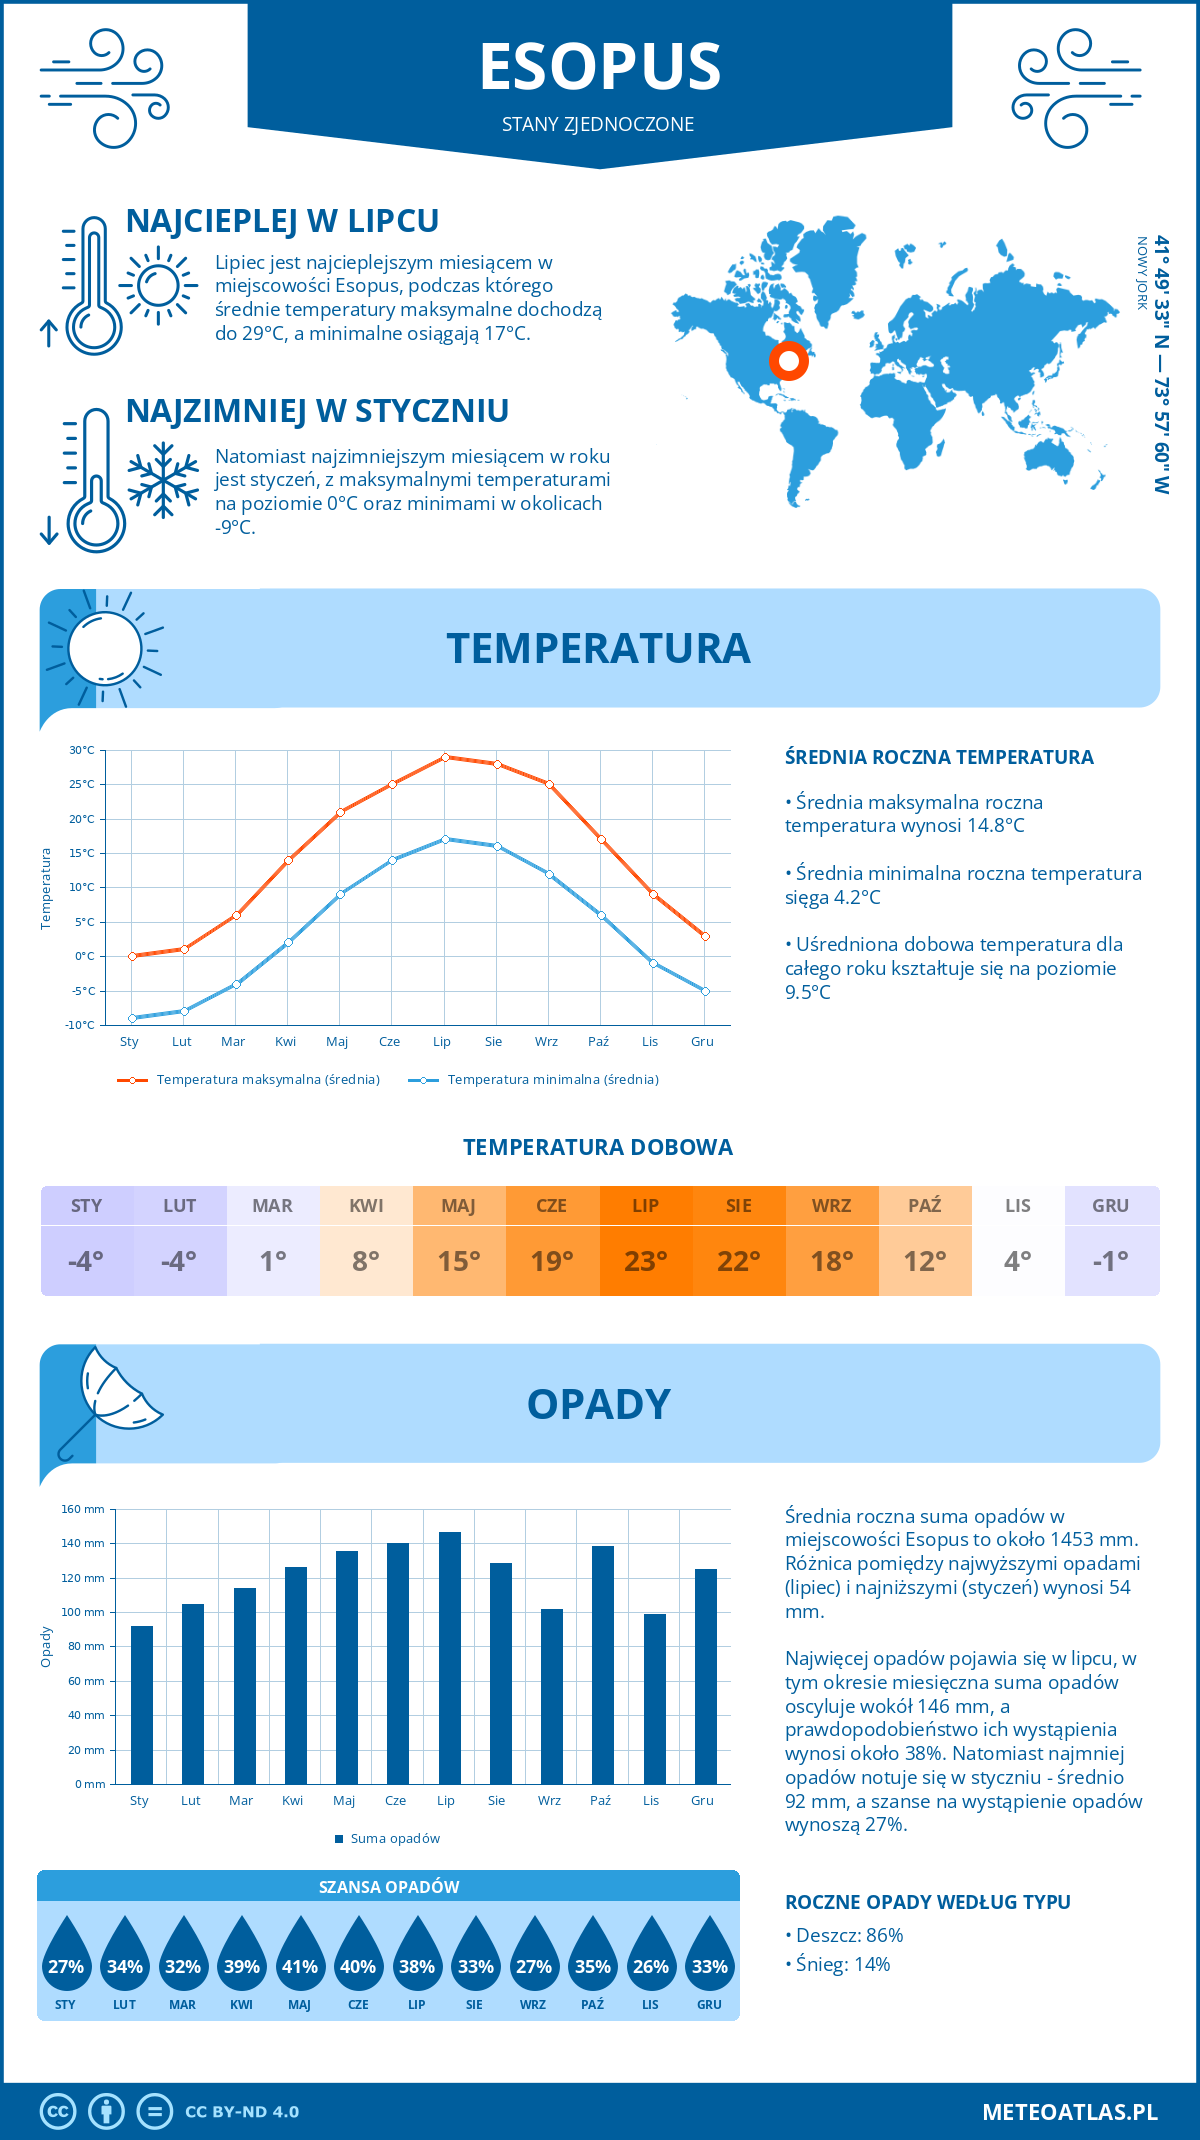 Pogoda Esopus (Stany Zjednoczone). Temperatura oraz opady.